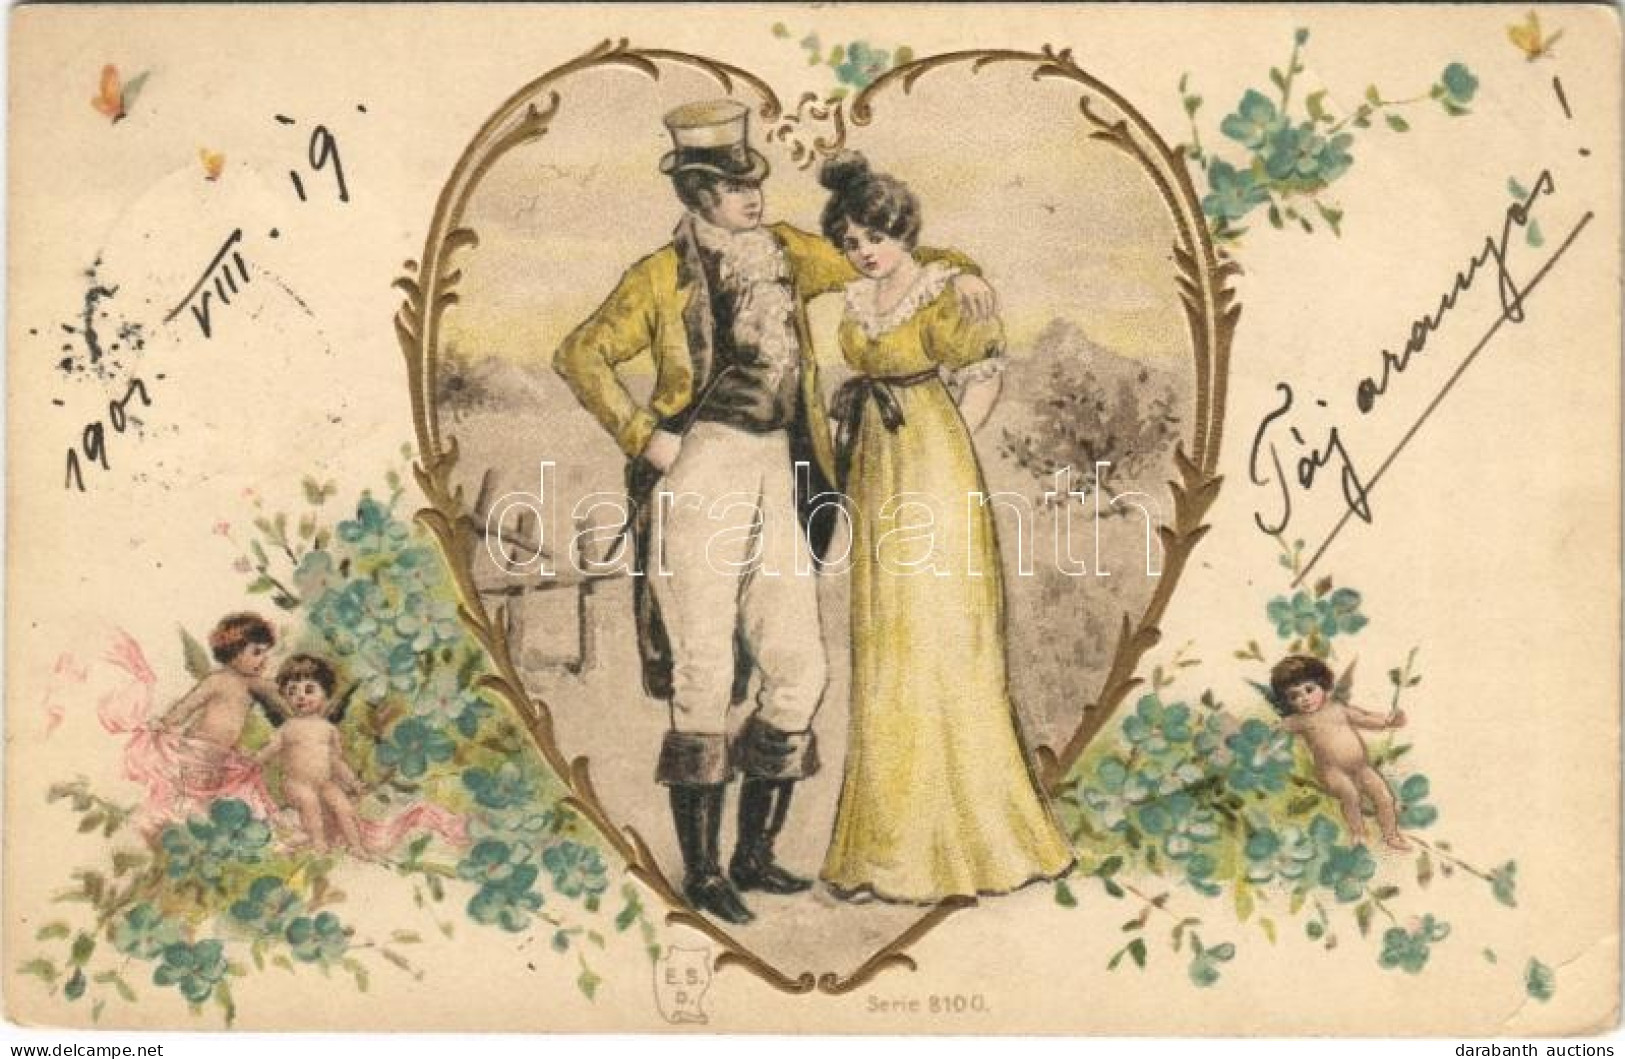 T2/T3 1901 Lady Art Postcard, Romantic Couple. E.S.D. Serie 8100. Art Nouveau, Floral, Litho (EB) - Non Classificati